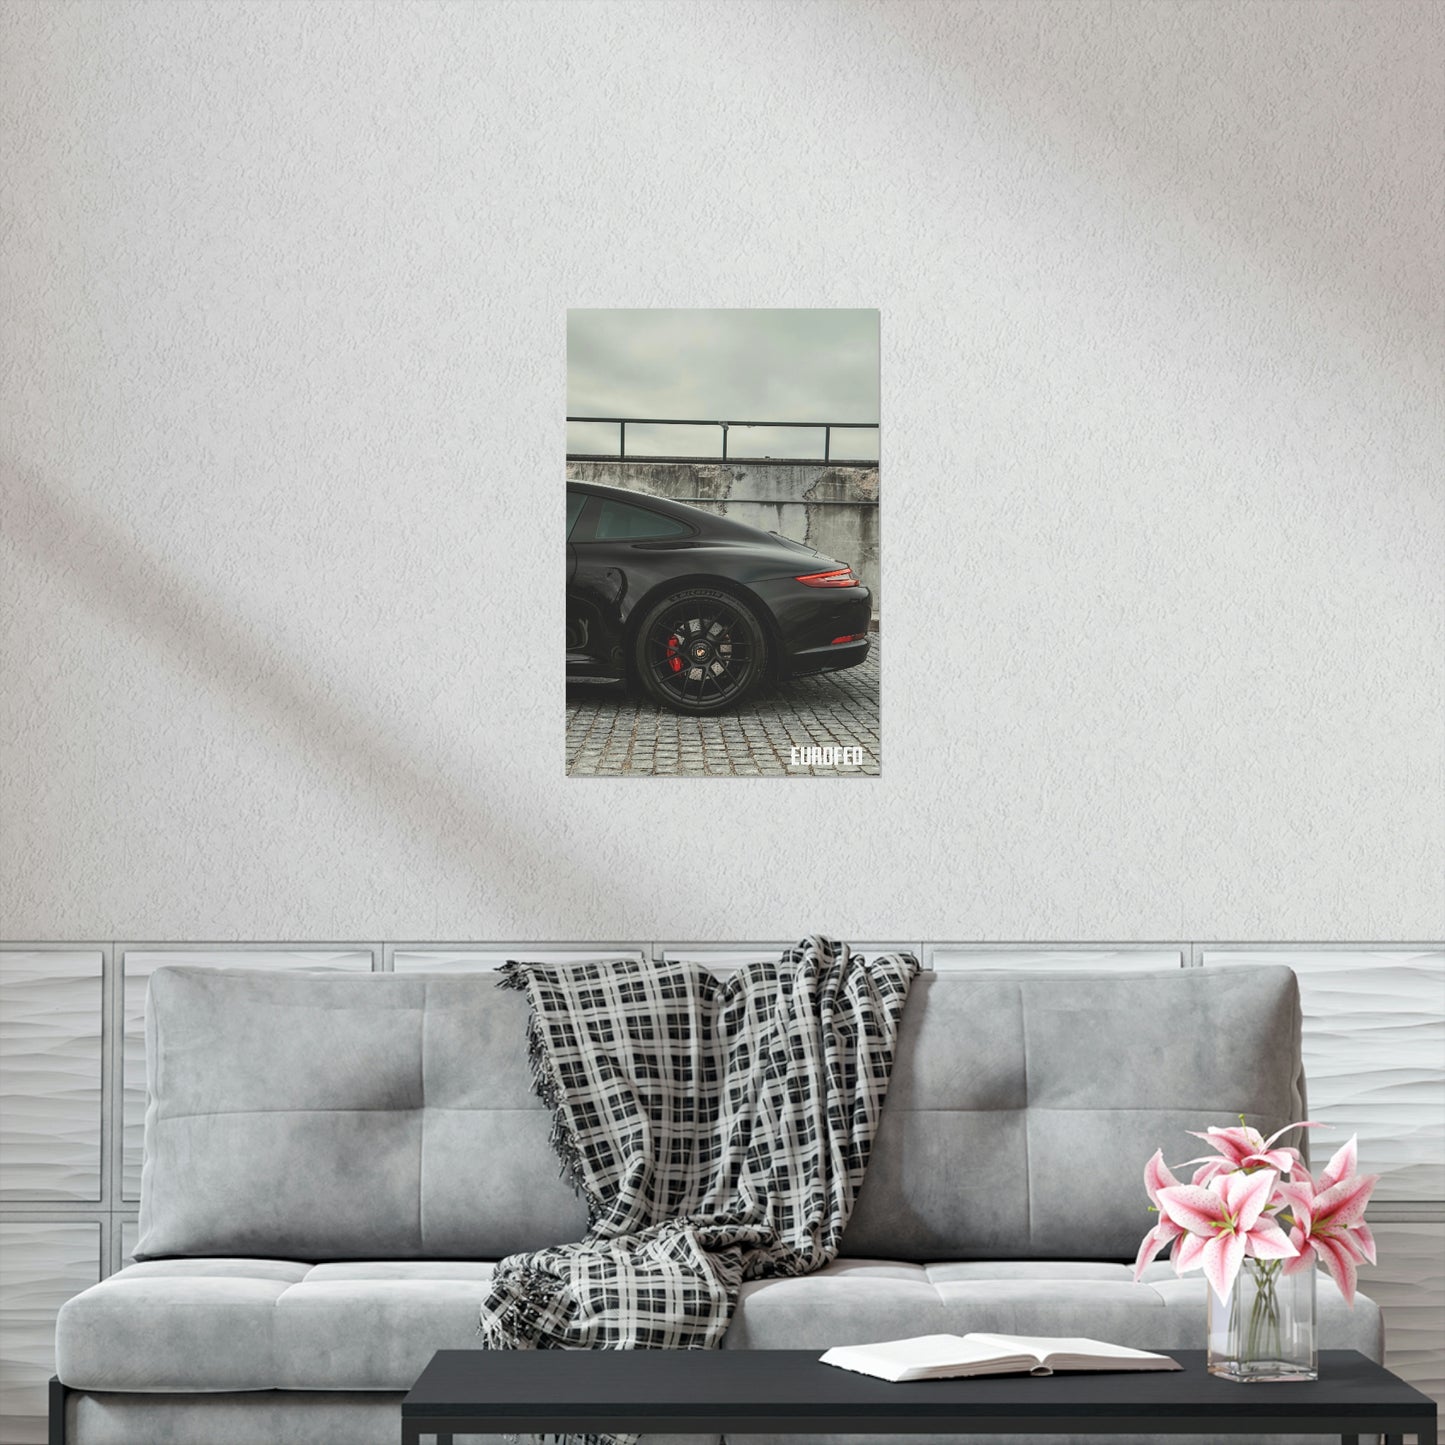 Premium Matte Vertical Poster Porsche 911 | Atlanta, Ga